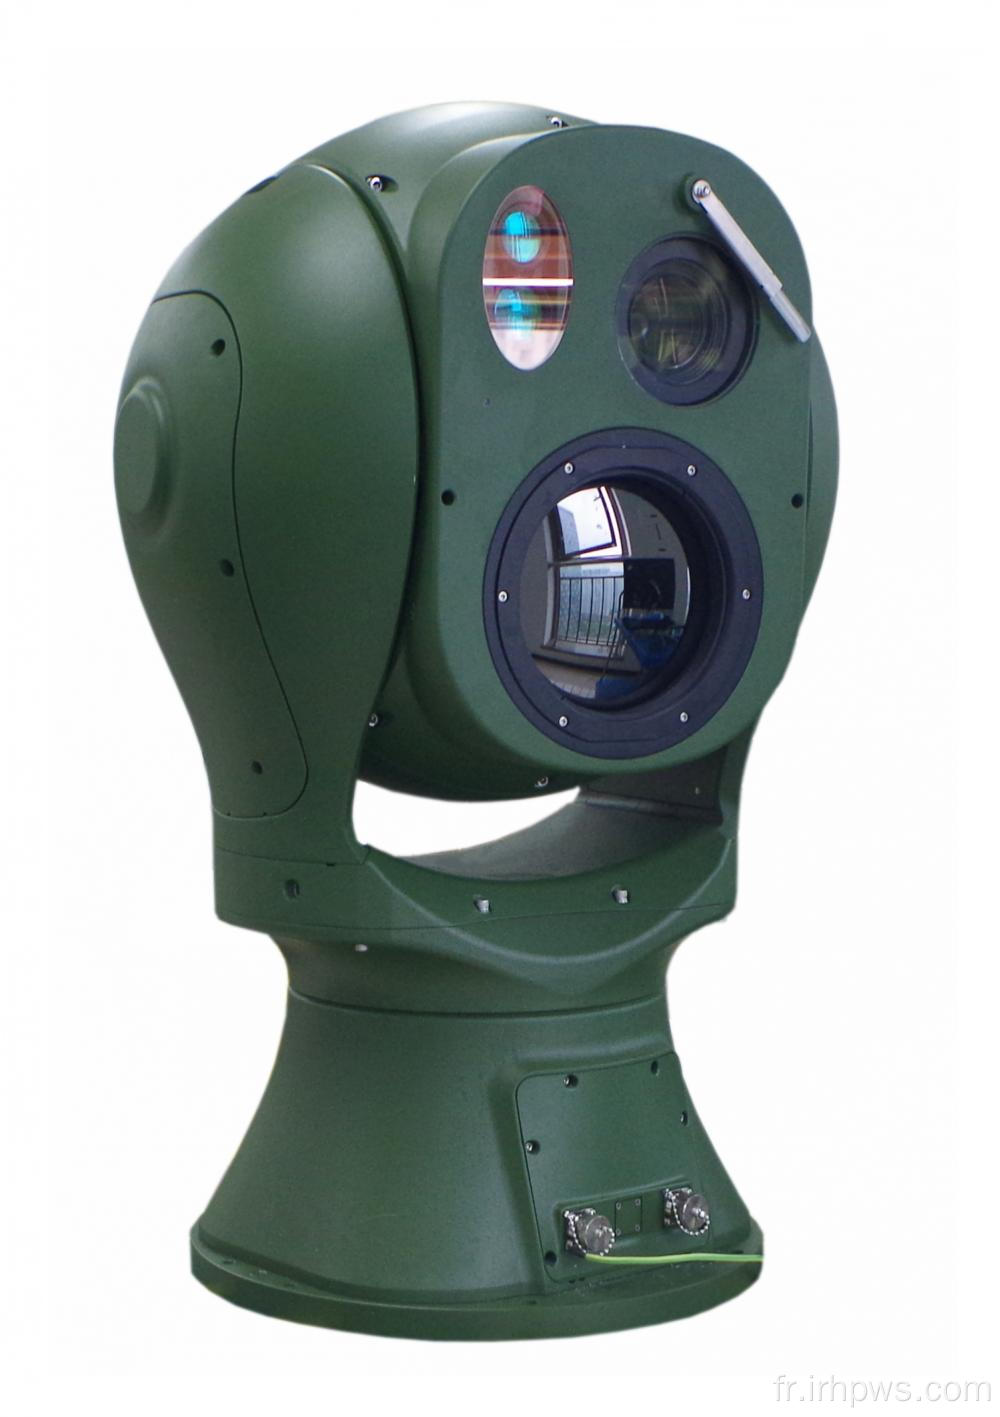 Imagerie thermique de la caméra de vidéosurveillance 2000 mm à longue portée